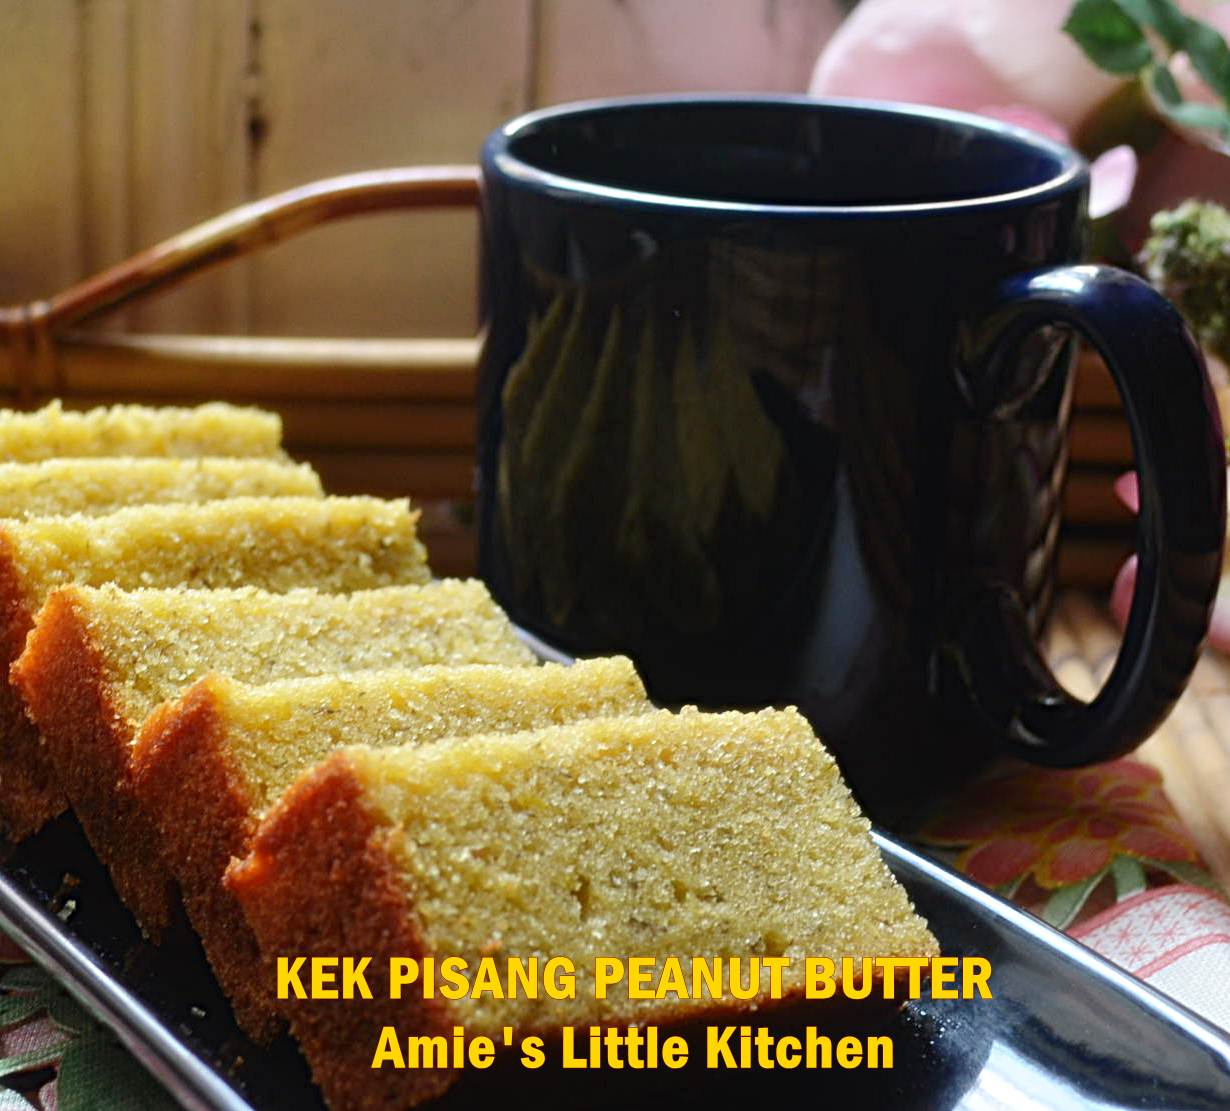 AMIE'S LITTLE KITCHEN: Jom Layan Kek Pisang Peanut Butter .